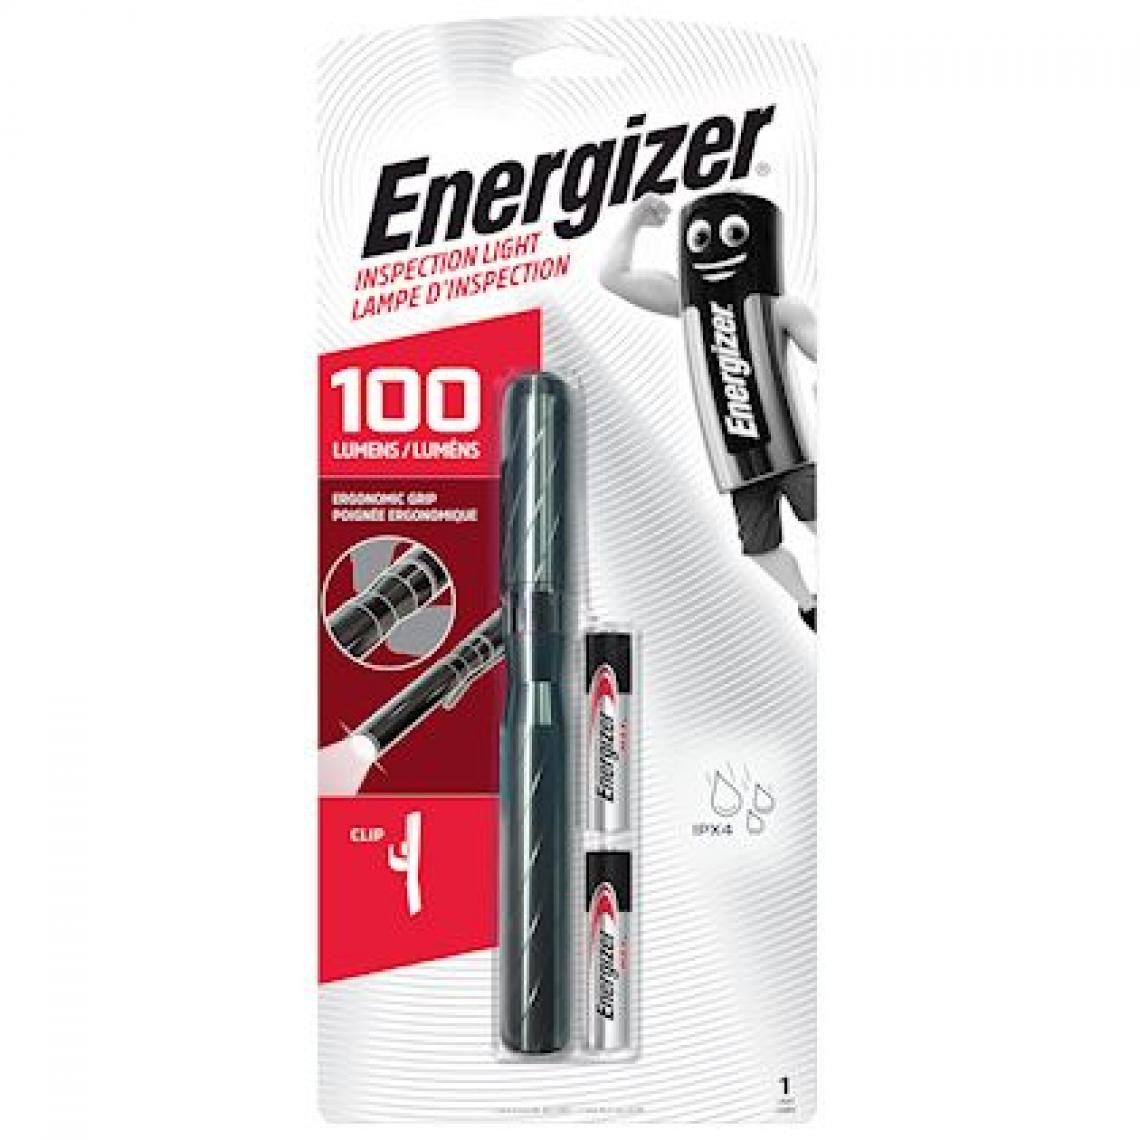 Energizer - torche d'inspection en métal - energizer 2aaa - piles incluses - energizer 430295 - Lampes portatives sans fil